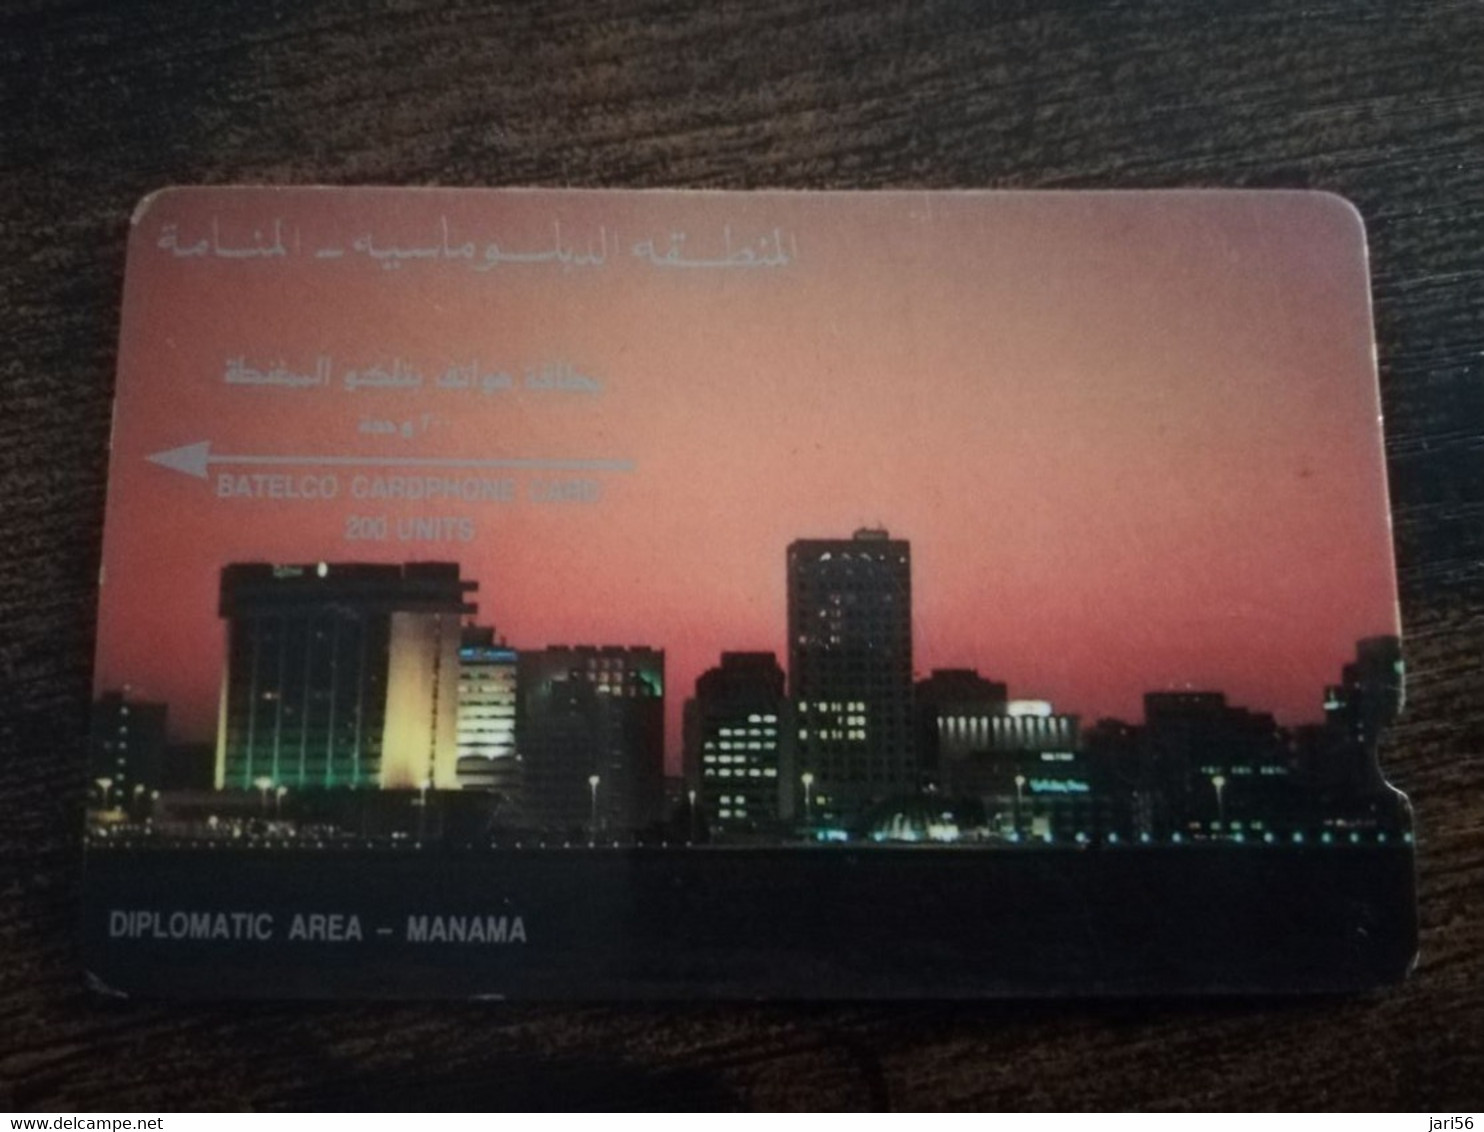 BAHRAIN   GPT CARD  200 UNITS/ DIPLOMATIC AREA MANAMA     /  EARLY  ISSUE BHN12   / 1BAHH  DEEP  NOTCH    **9127** - Bahrein